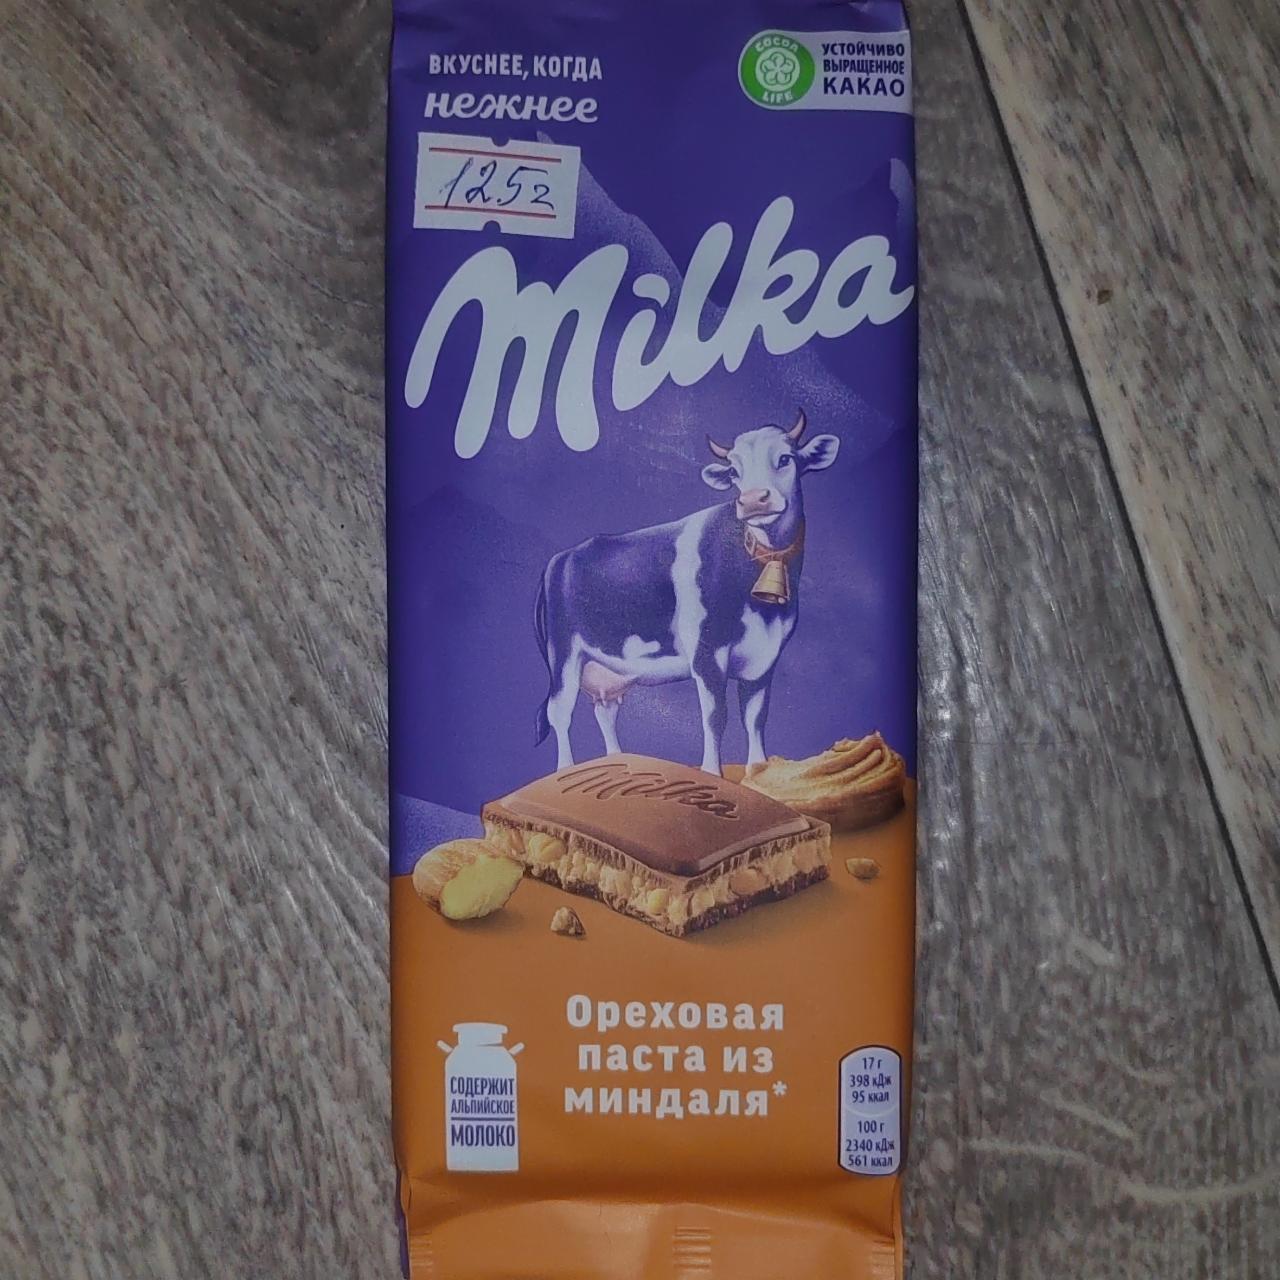 Фото - шоколад молочный с начинкой с добавлением арахисовой пастой с миндаля из дробленным карамелизированным солёным миндалём Milka